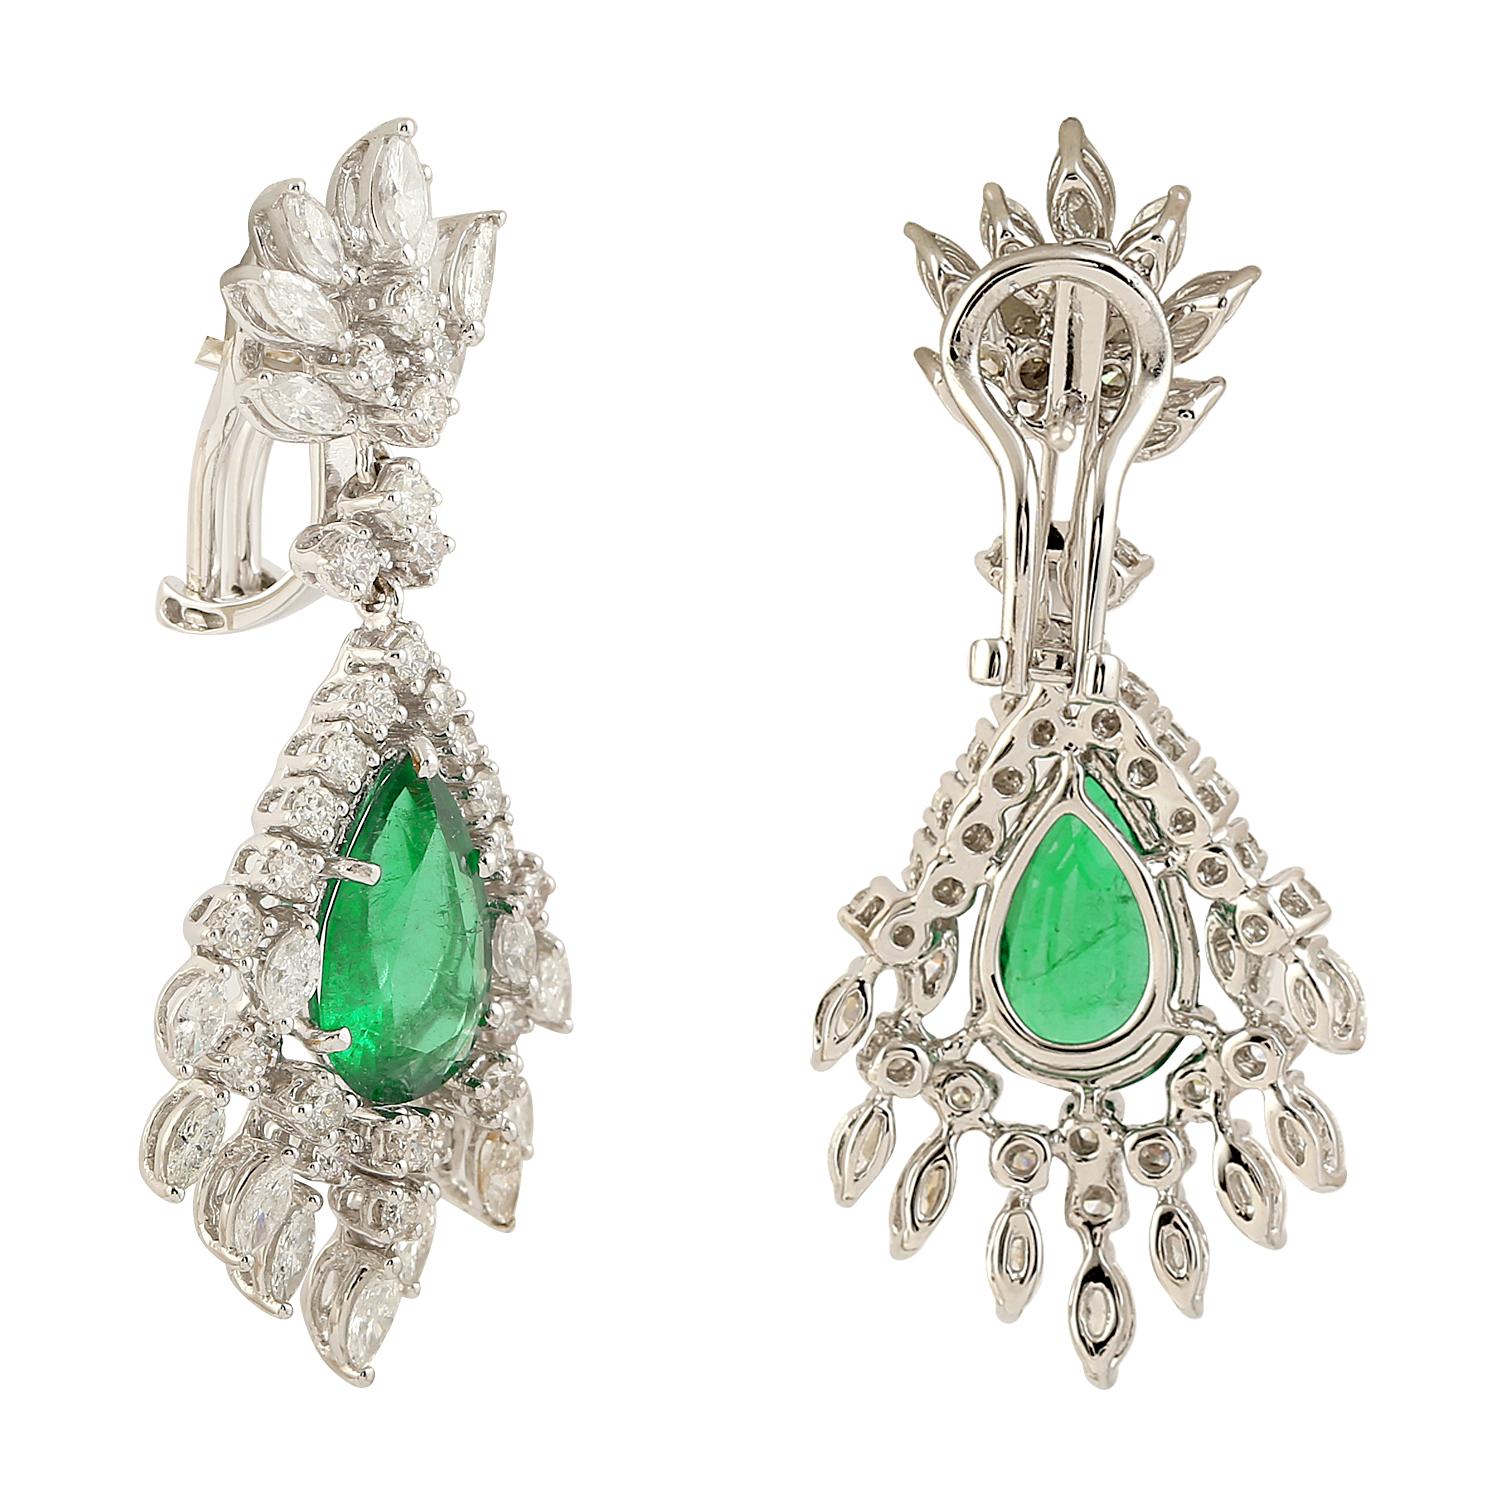 Diese exquisiten Ohrringe aus 14-karätigem Gold sind von Hand mit einem Smaragd von 5,25 Karat und schimmernden Diamanten von 3,8 Karat besetzt. 

FOLLOW MEGHNA JEWELS Storefront, um die neueste Collection'S und exklusive Stücke zu sehen. Meghna